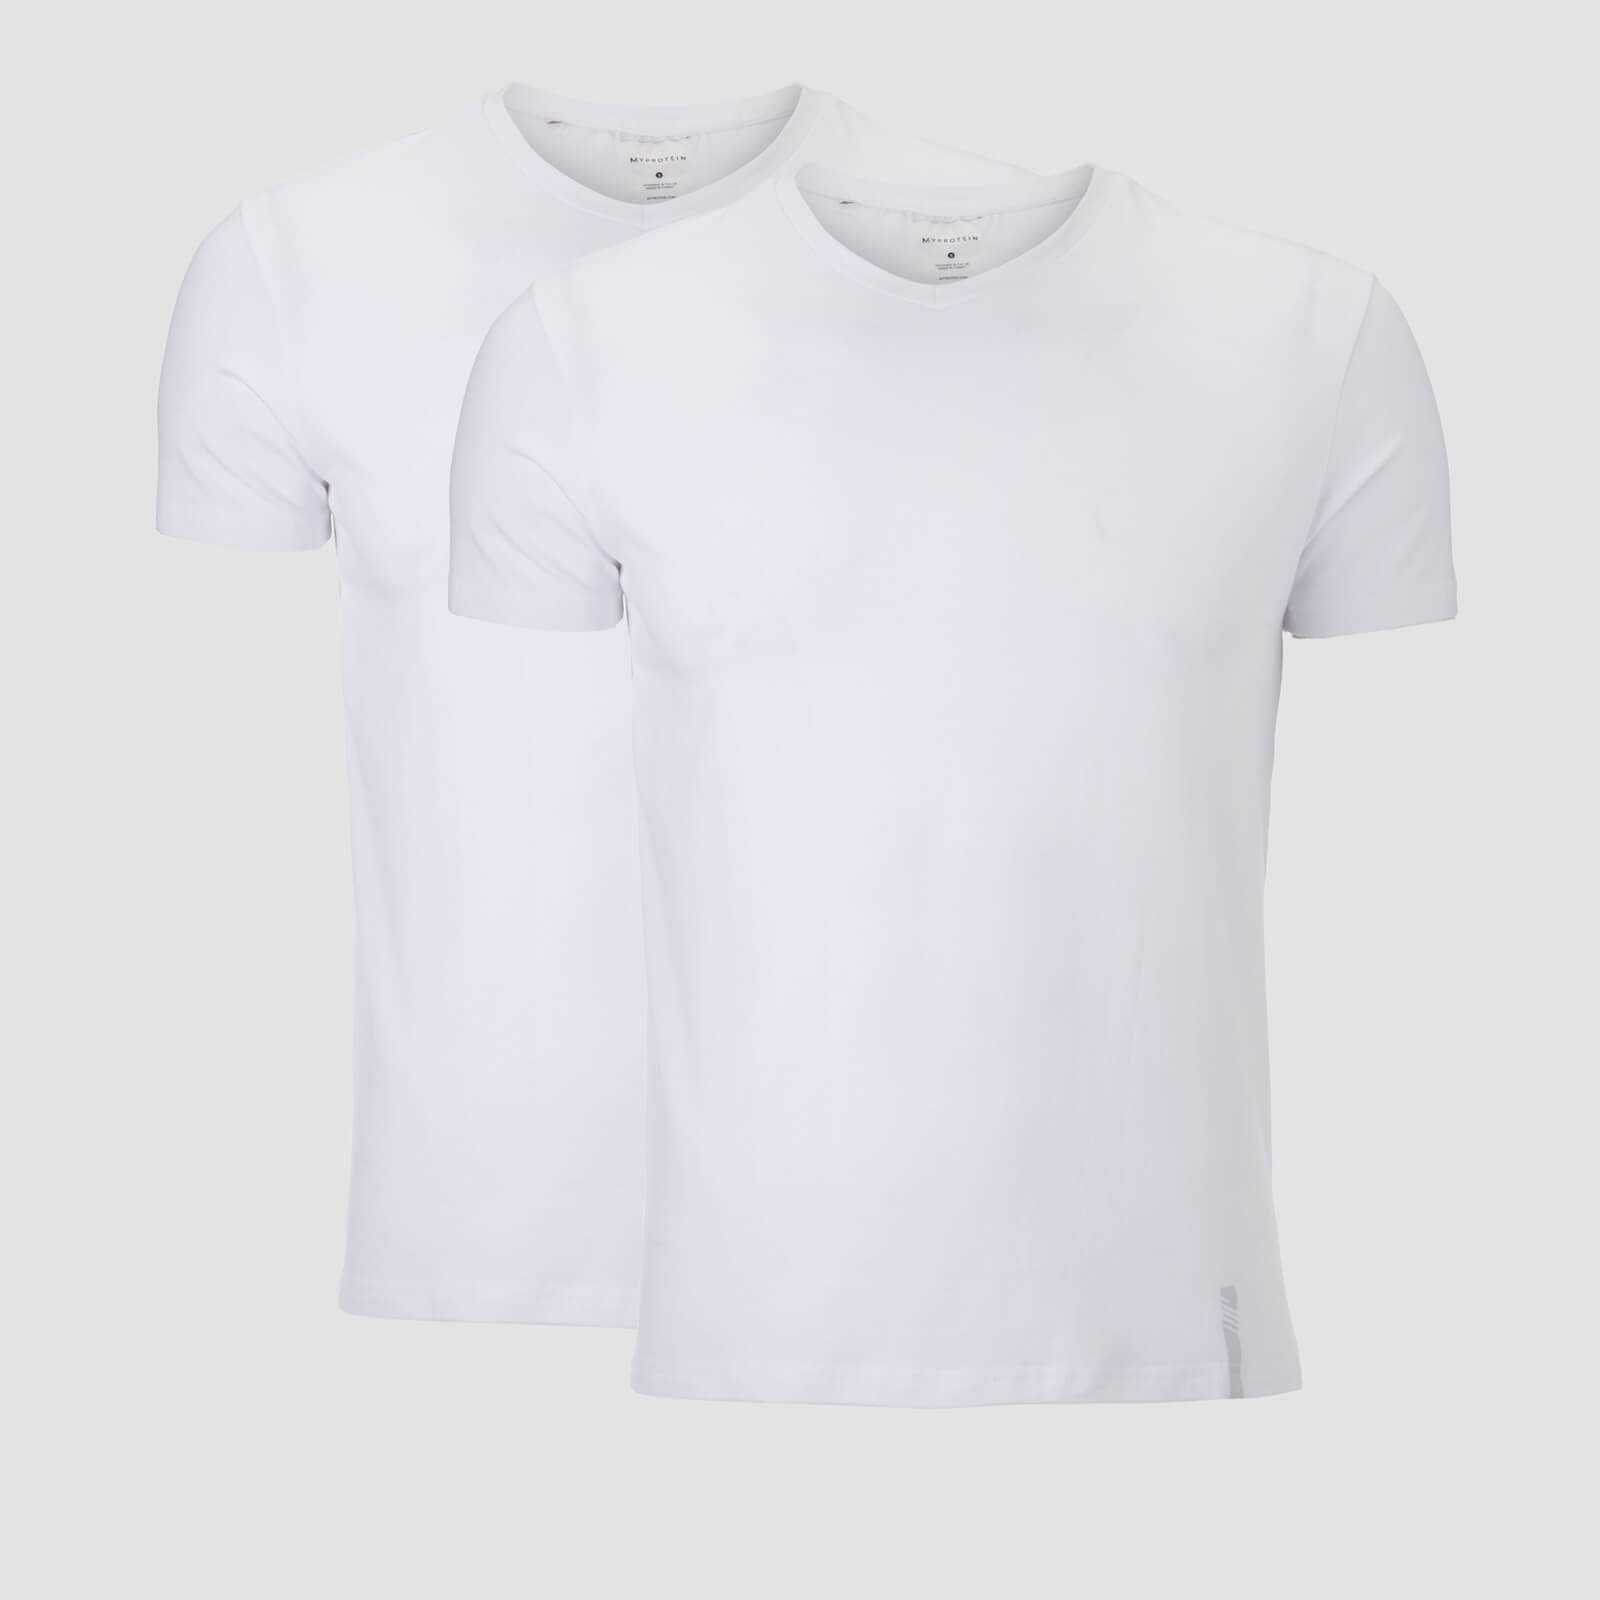 MP เสื้อยืดคอวี ลุกซ์คลาสสิก สำหรับผู้ชาย - สีขาว/สีขาว (2 ตัว)